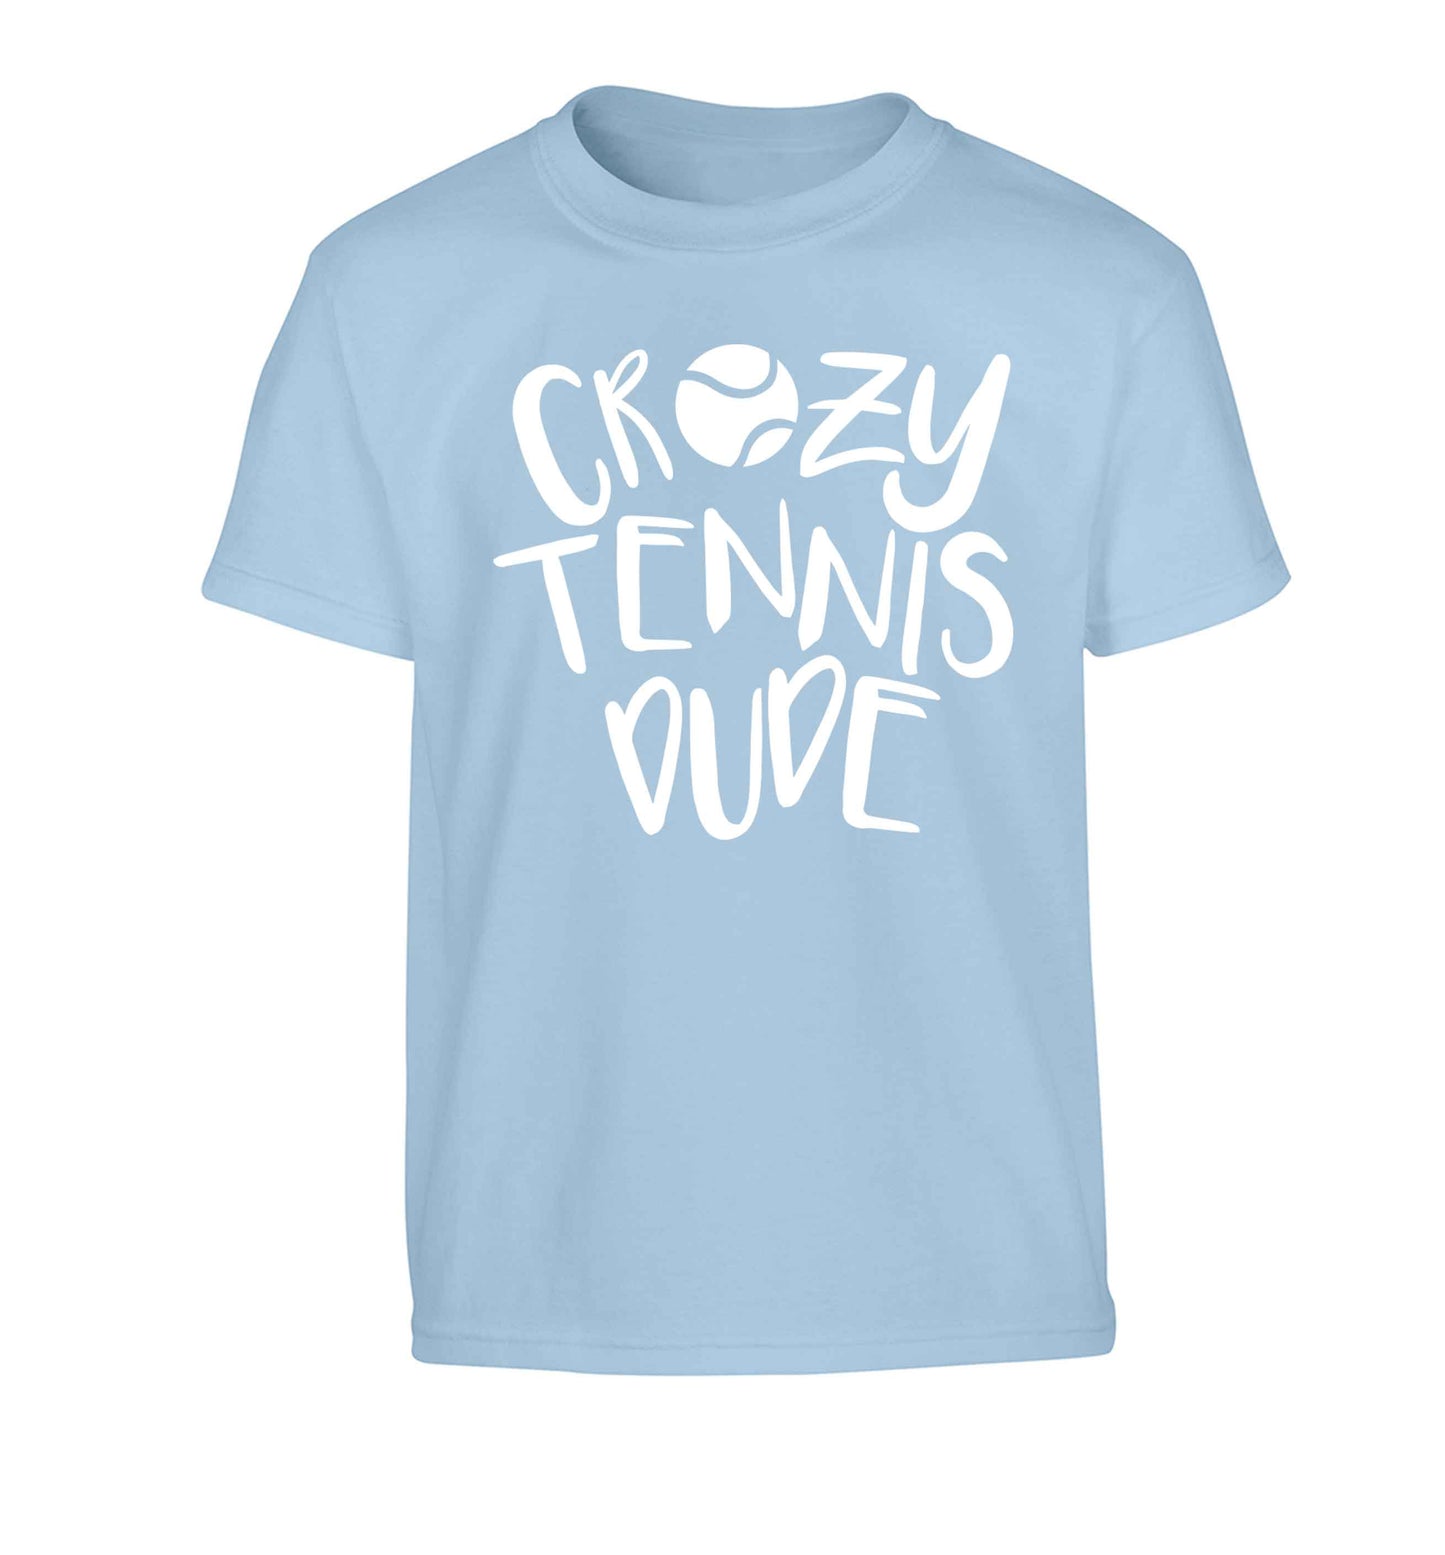 Crazy tennis dude Children's light blue Tshirt 12-13 Years